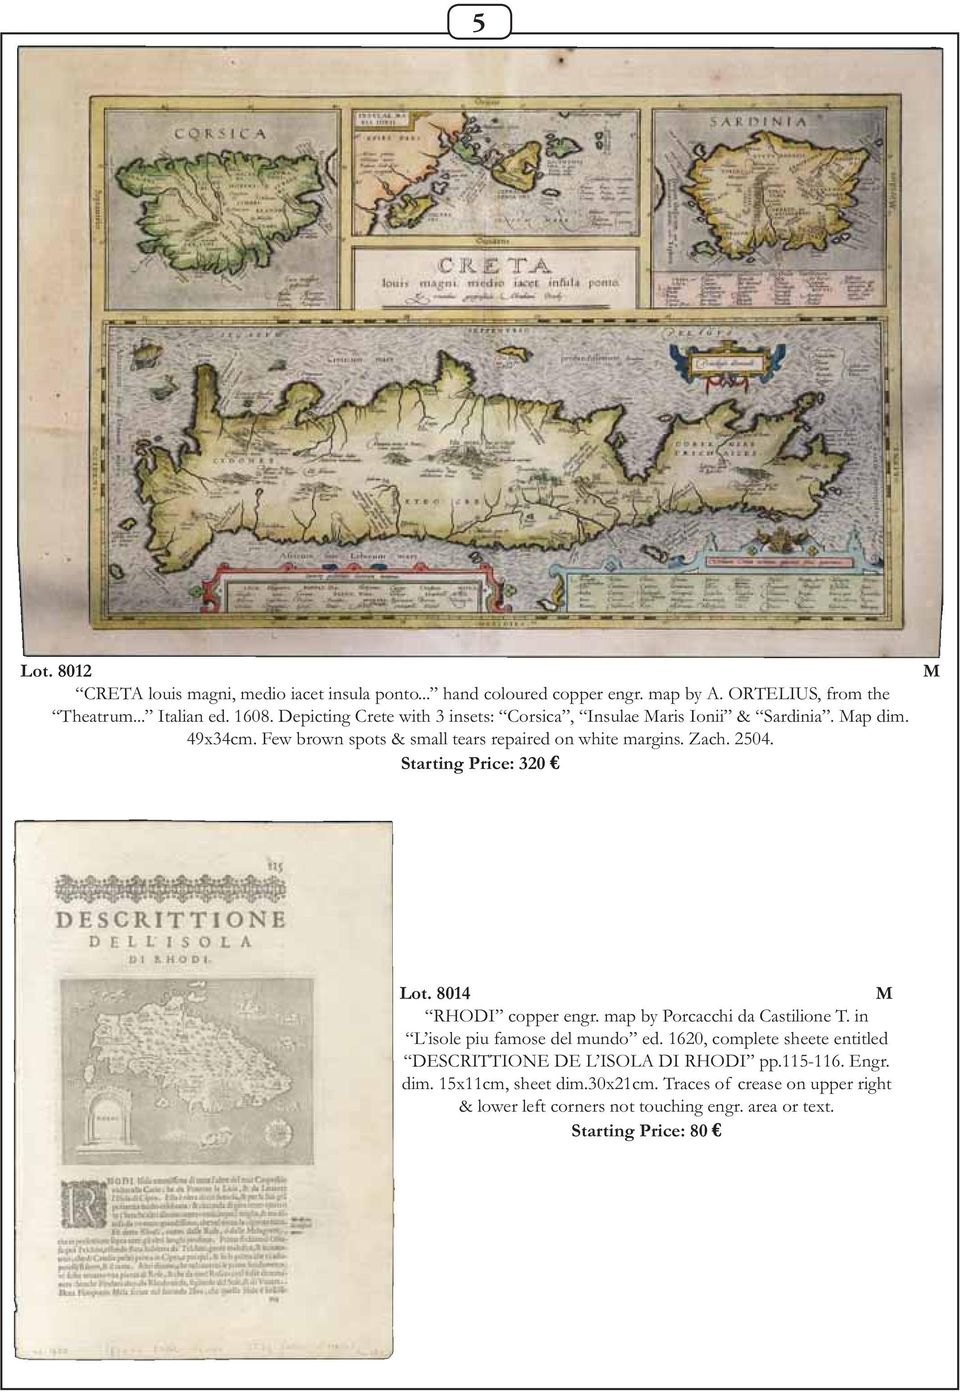 Starting Price: 320 Lot. 8014 RHODI copper engr. map by Porcacchi da Castilione T. in L isole piu famose del mundo ed.